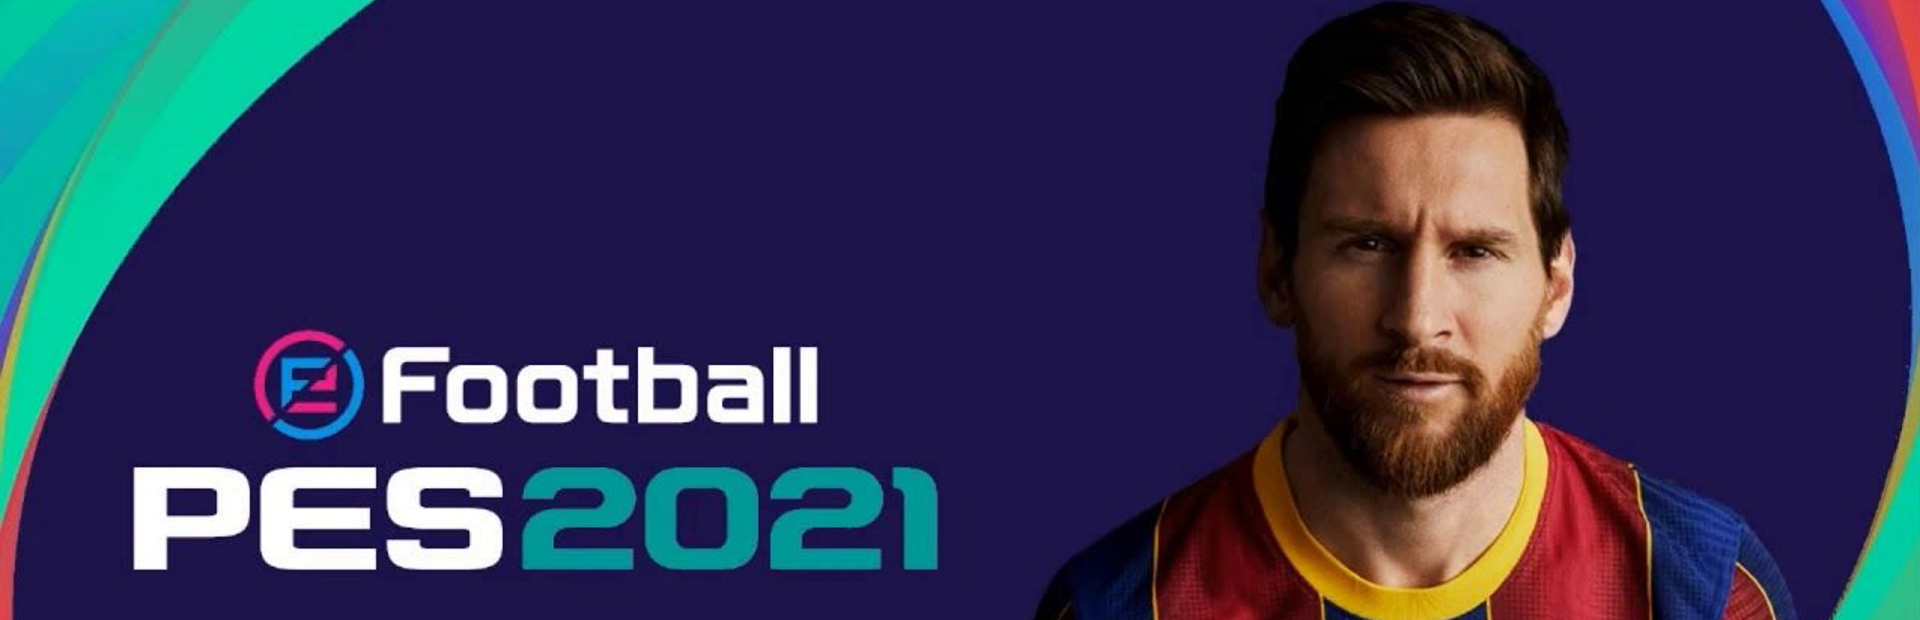 دانلود بازی eFootball PES 2021 برای PC | گیمباتو